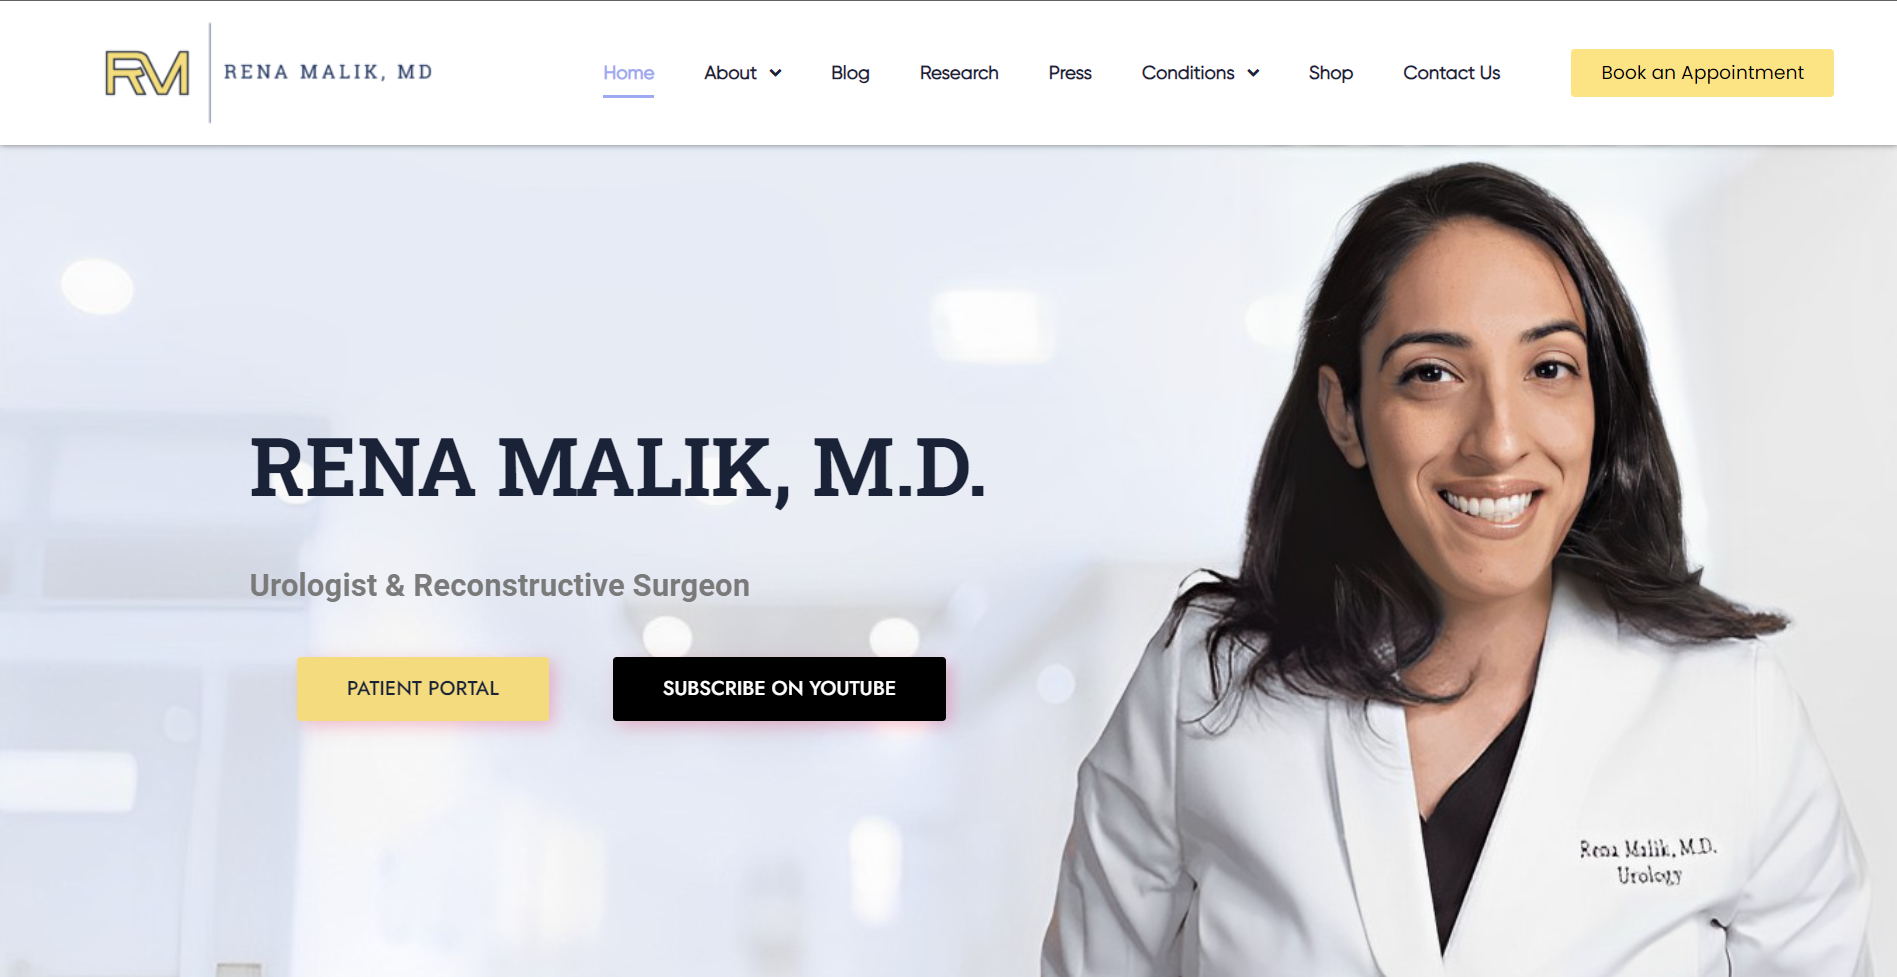 Rena Malik's Website